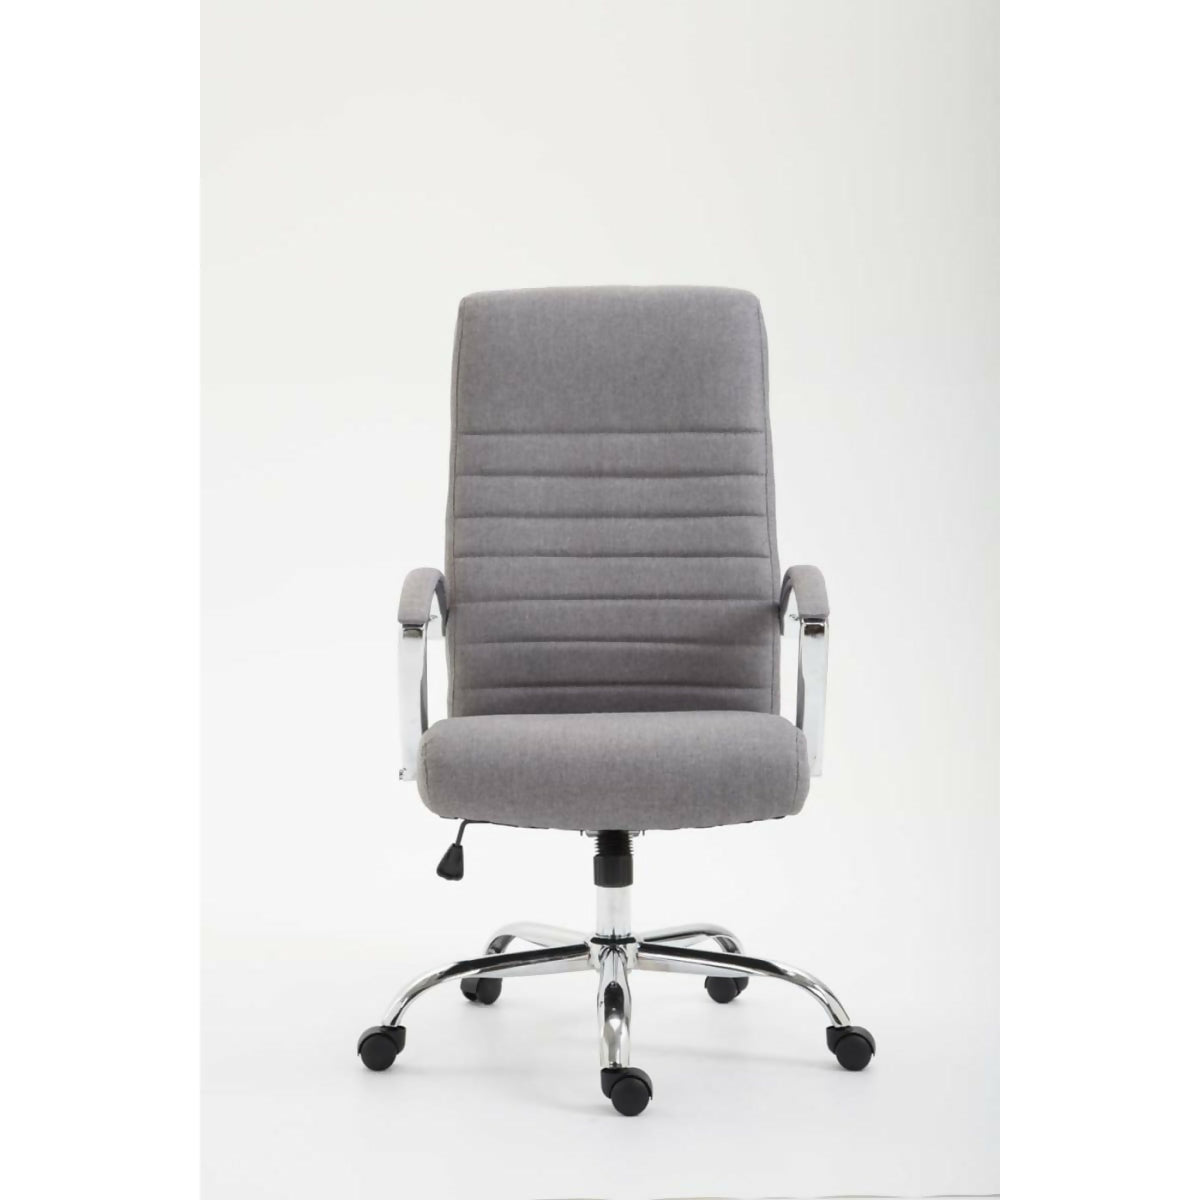 Valais office armchair - Gray Fabric - 0